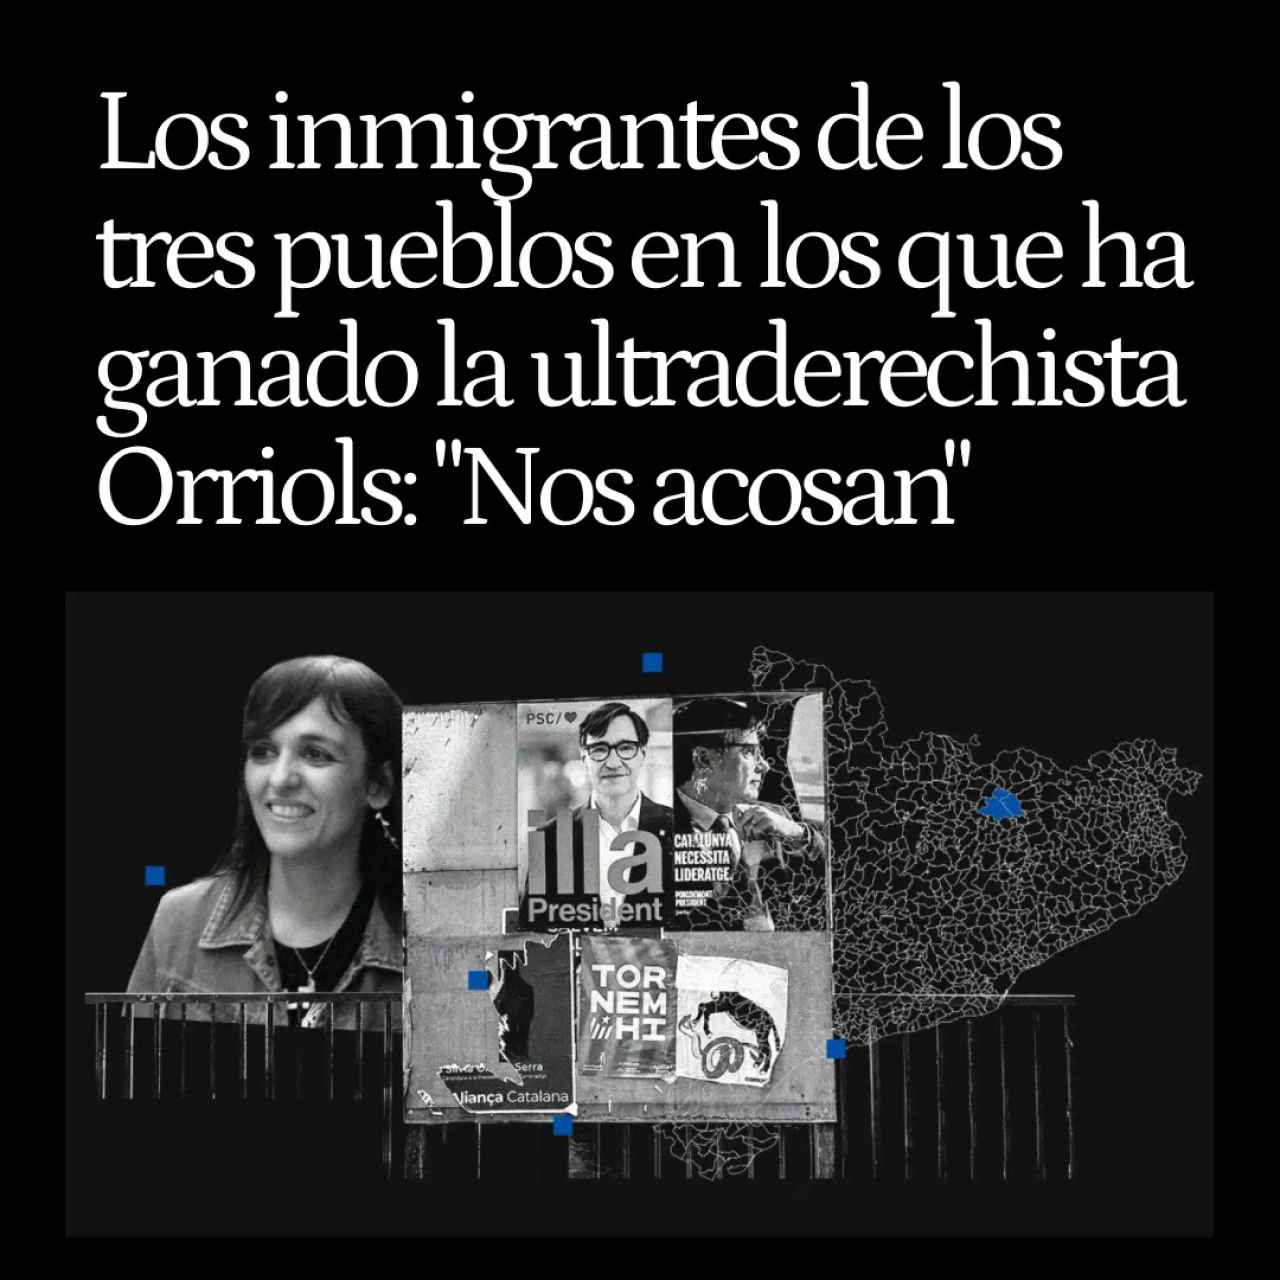 Los inmigrantes de los tres pueblos en los que ha ganado Orriols, asustados por su auge: "Nos acosan"